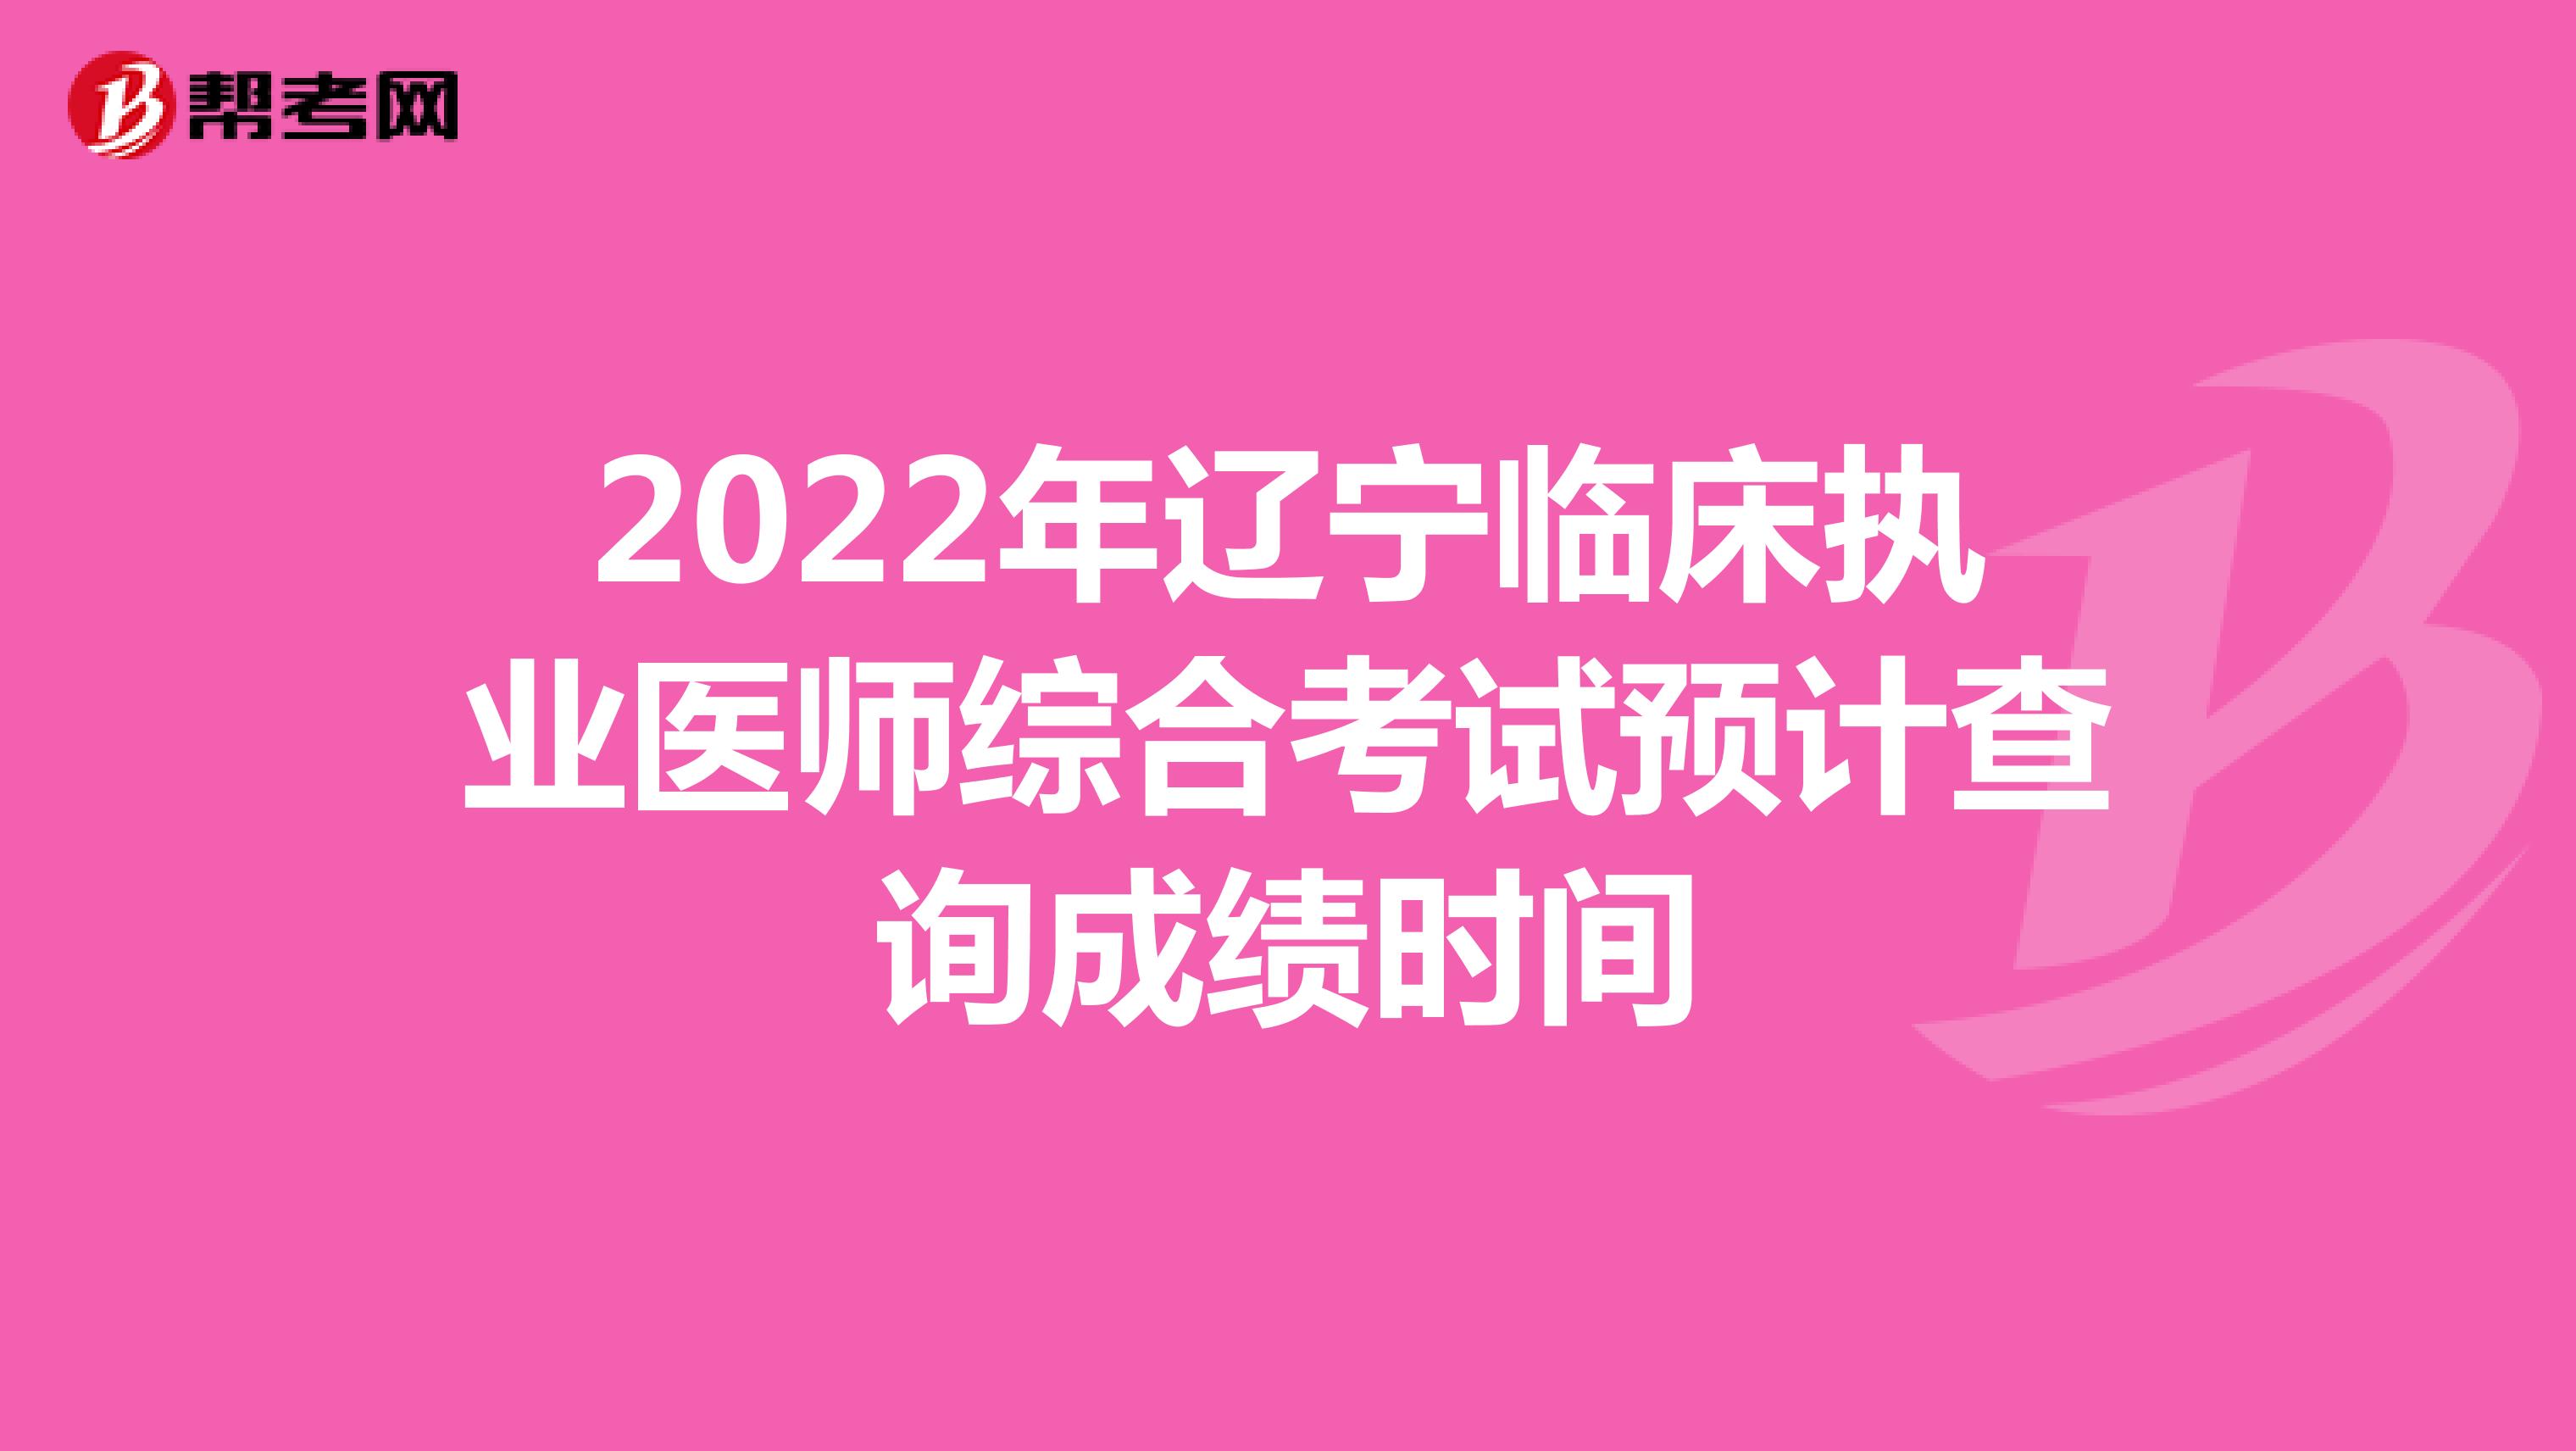 2022年辽宁临床执业医师综合考试预计查询成绩时间